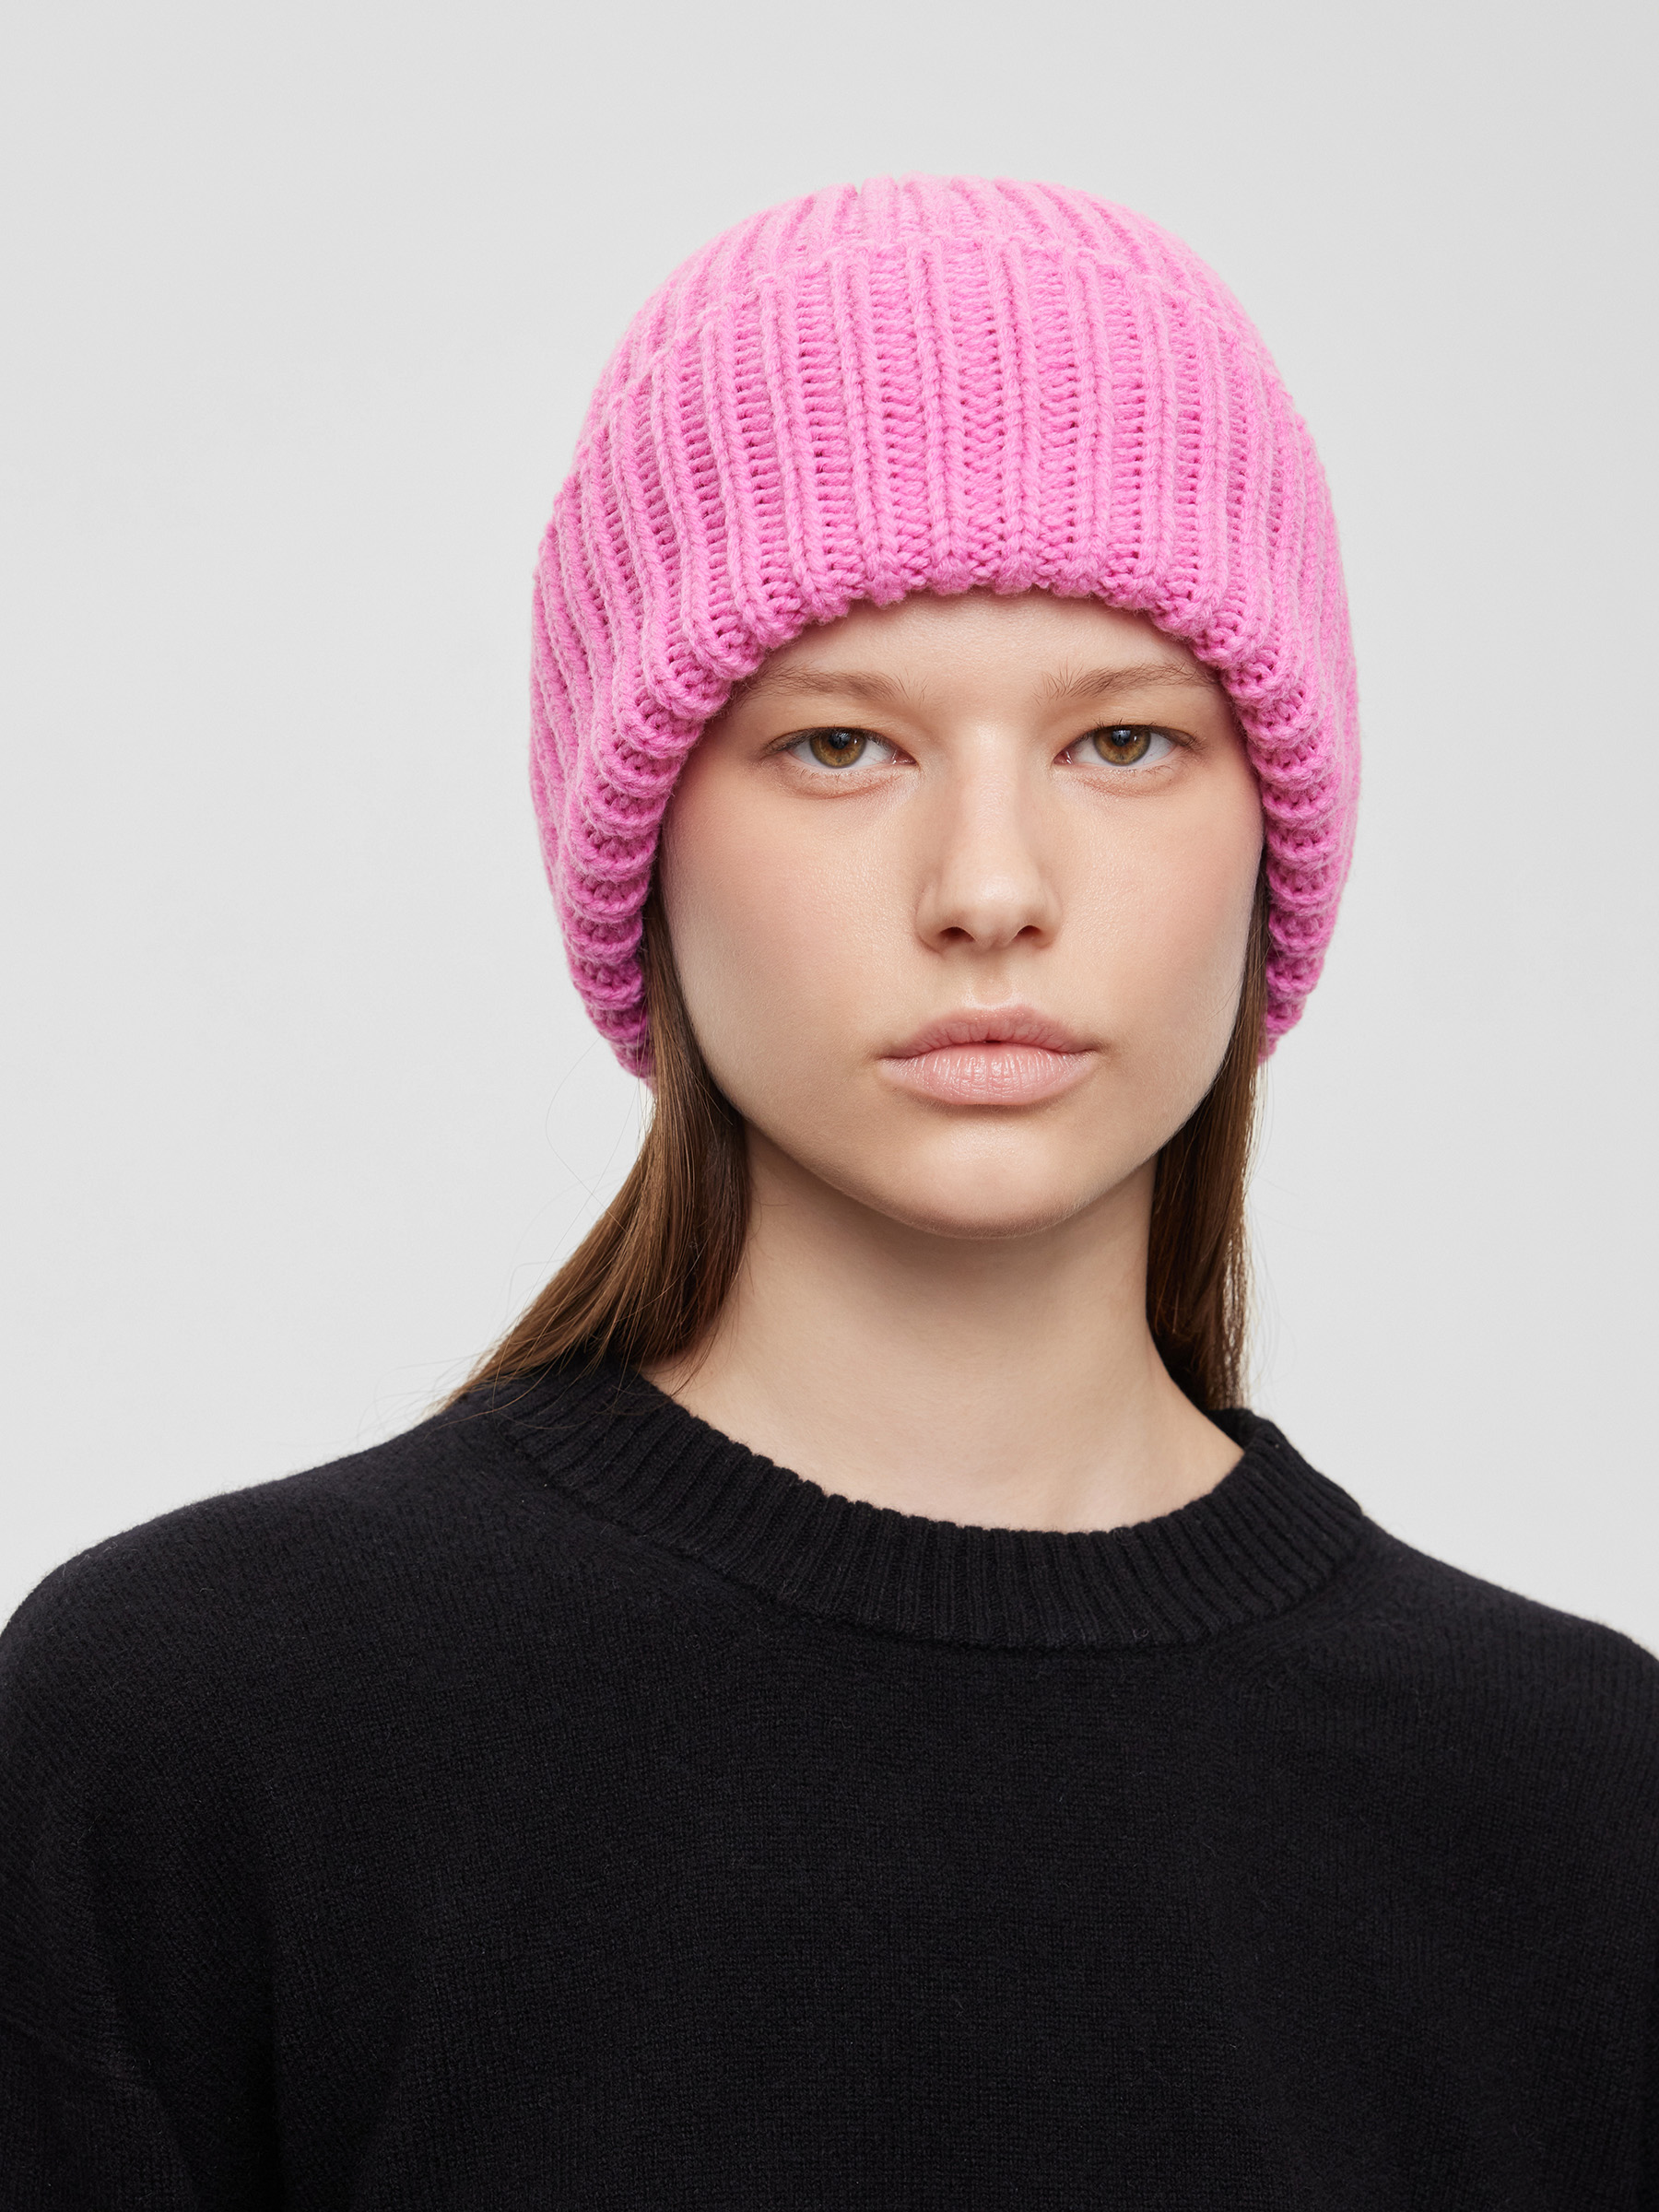 Шапка-бини женская крупной вязки, цвет – розовая фуксия шапка бини топ шап фуксия